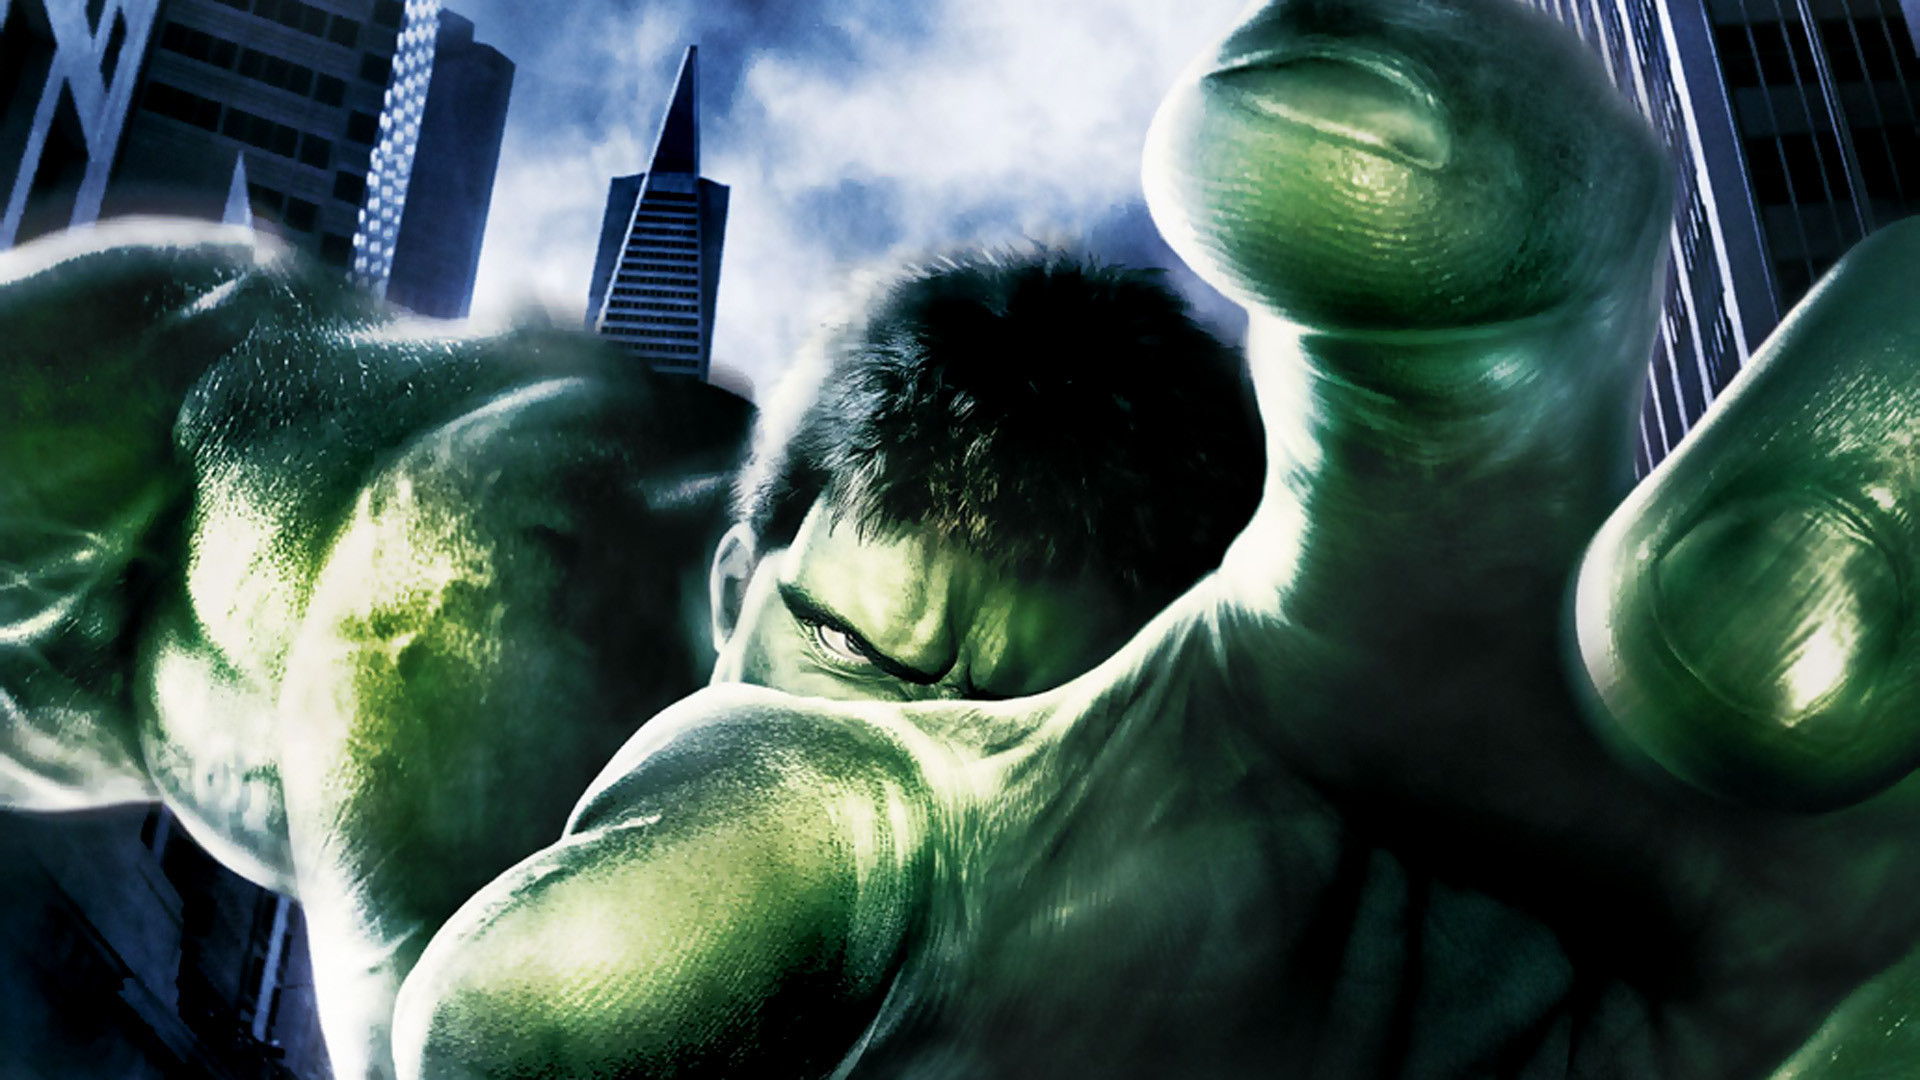 Hulk Movie Wallpapers Hulk Movie Wallpapers HD Wallpapers